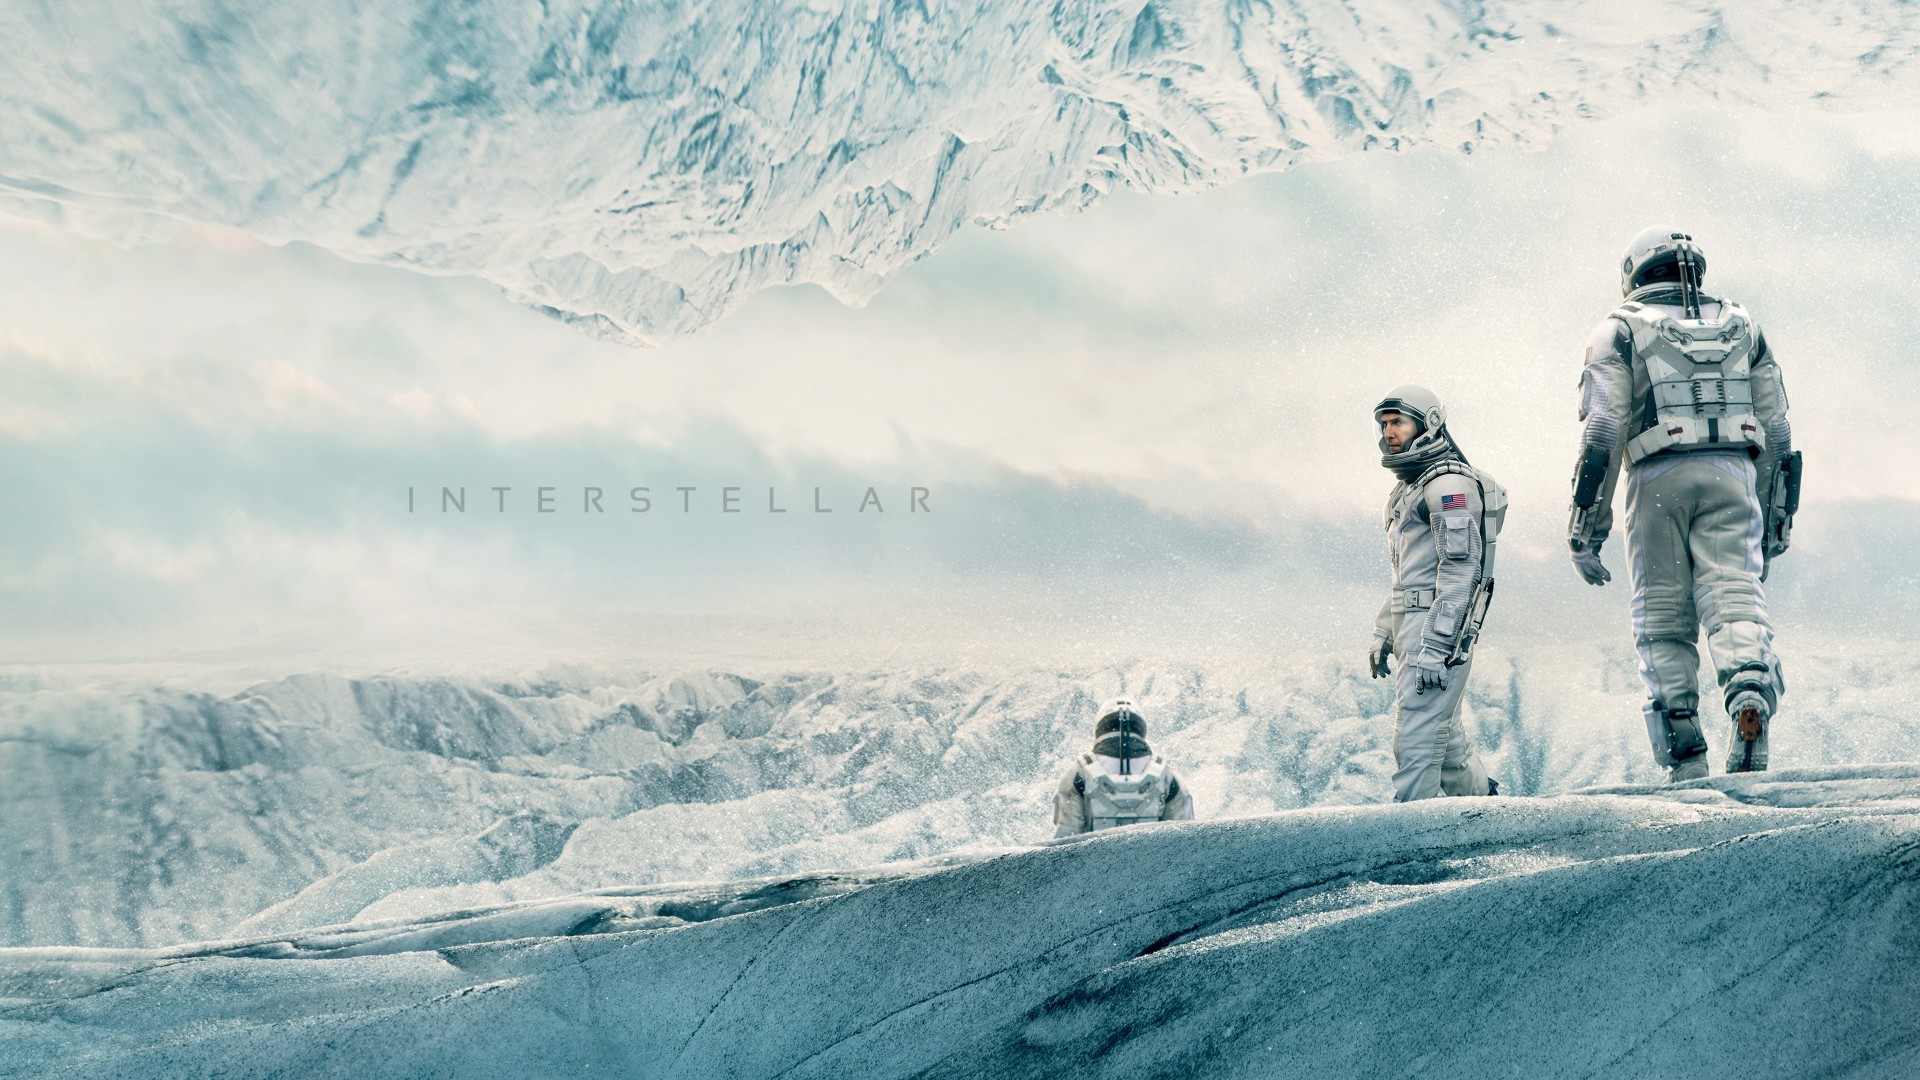 Interstellar, movie, matthew mcconaughey, space suit, snow, winter, white, sky (horizontal)